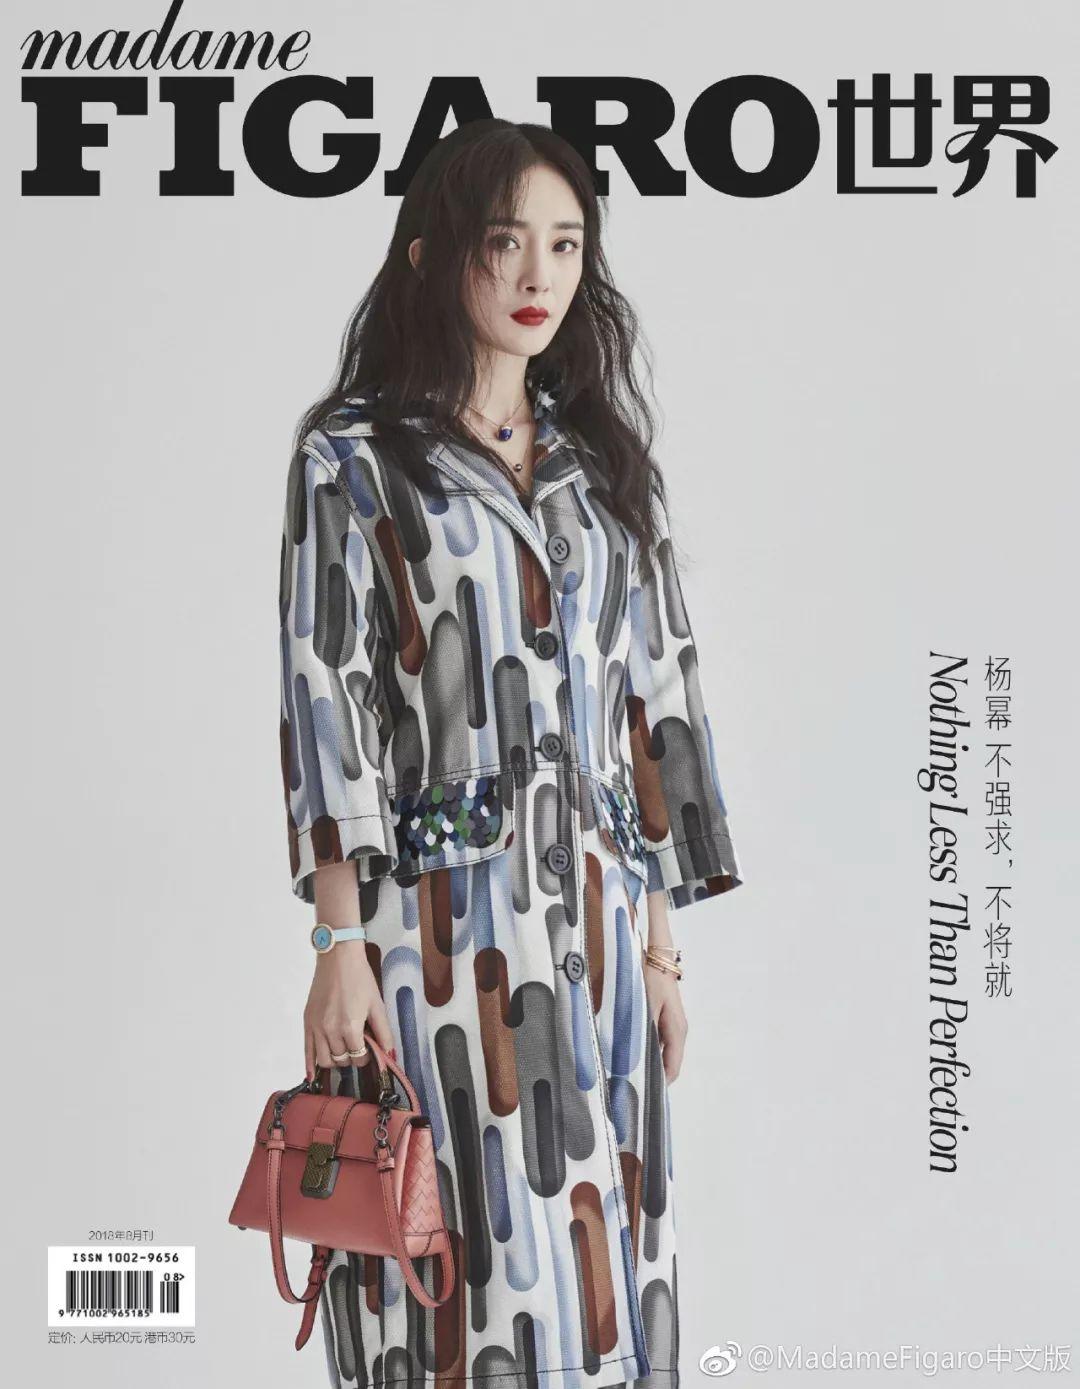 VOGUE新加坡时尚杂志封面